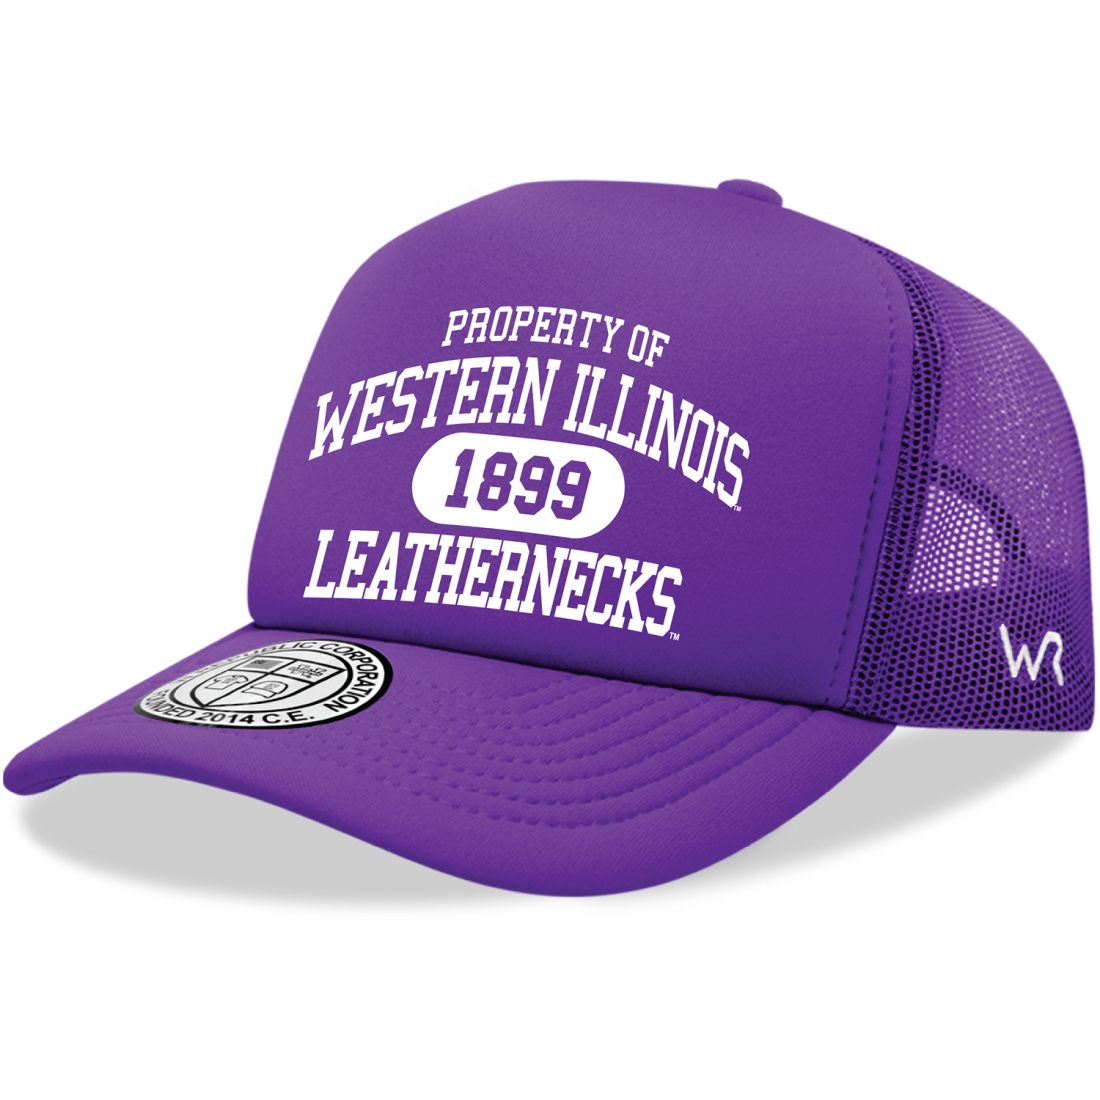 WIU Western Illinois University Leathernecks Property Foam Trucker Hats